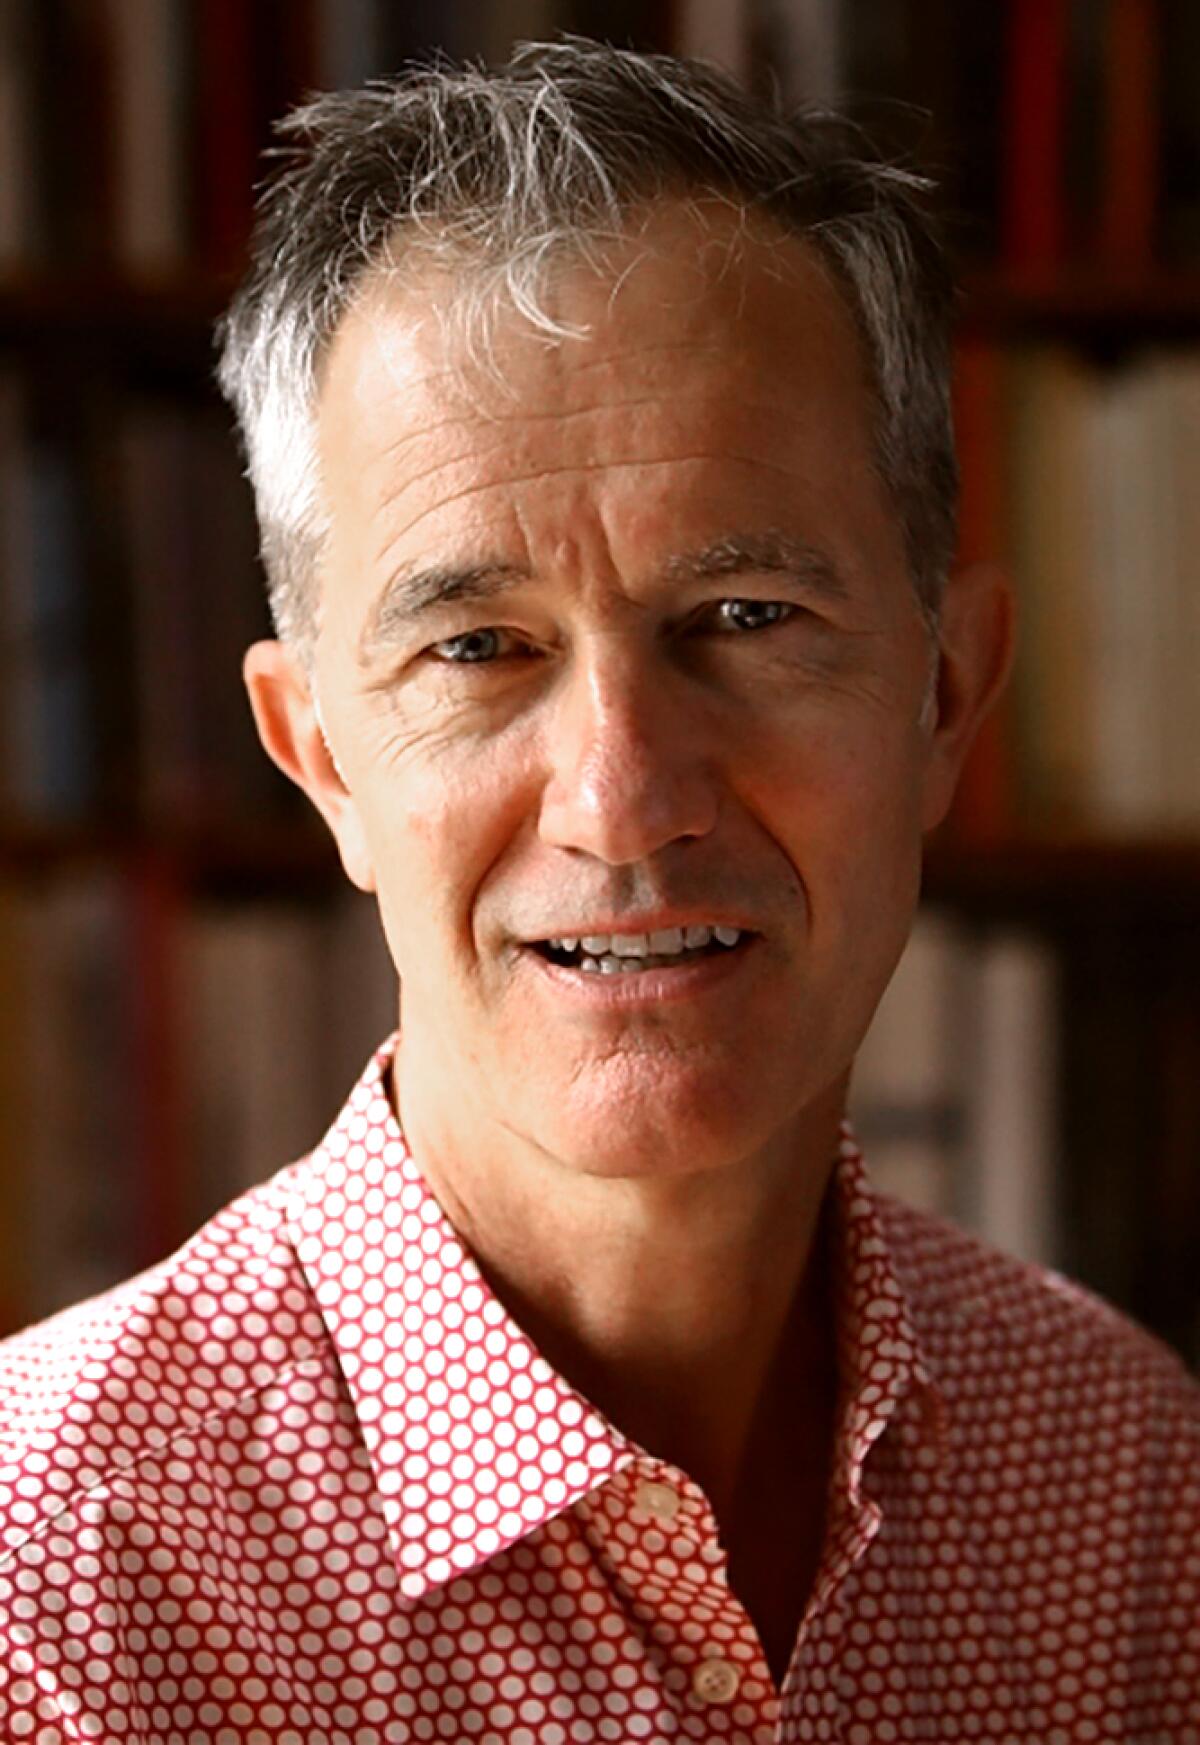 Author Geoff Dyer